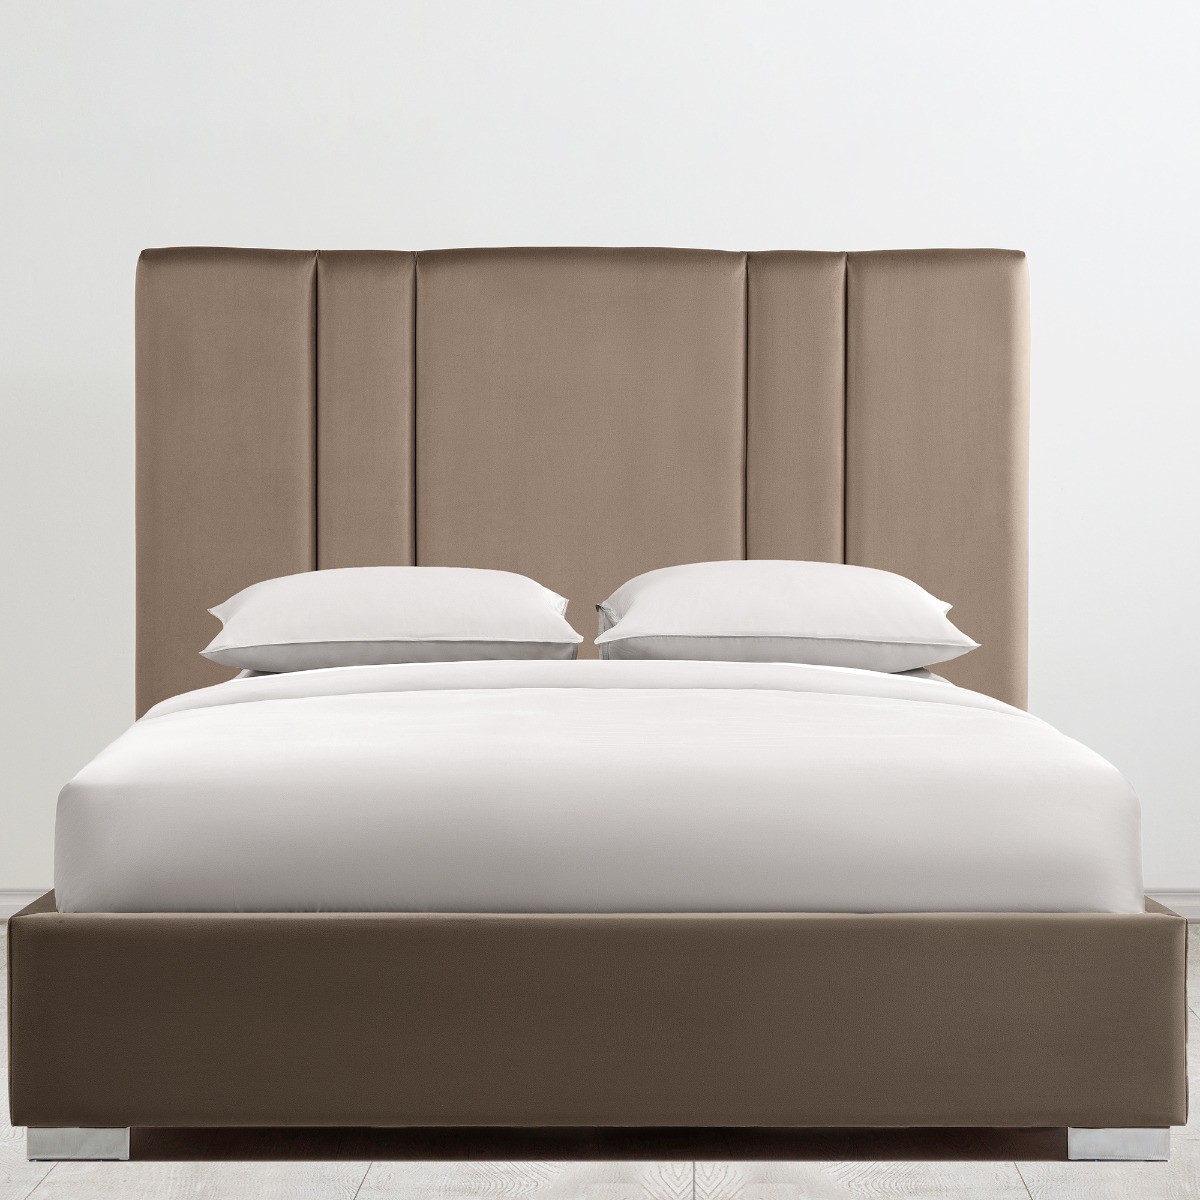  Кровать Тоскан  - Фото